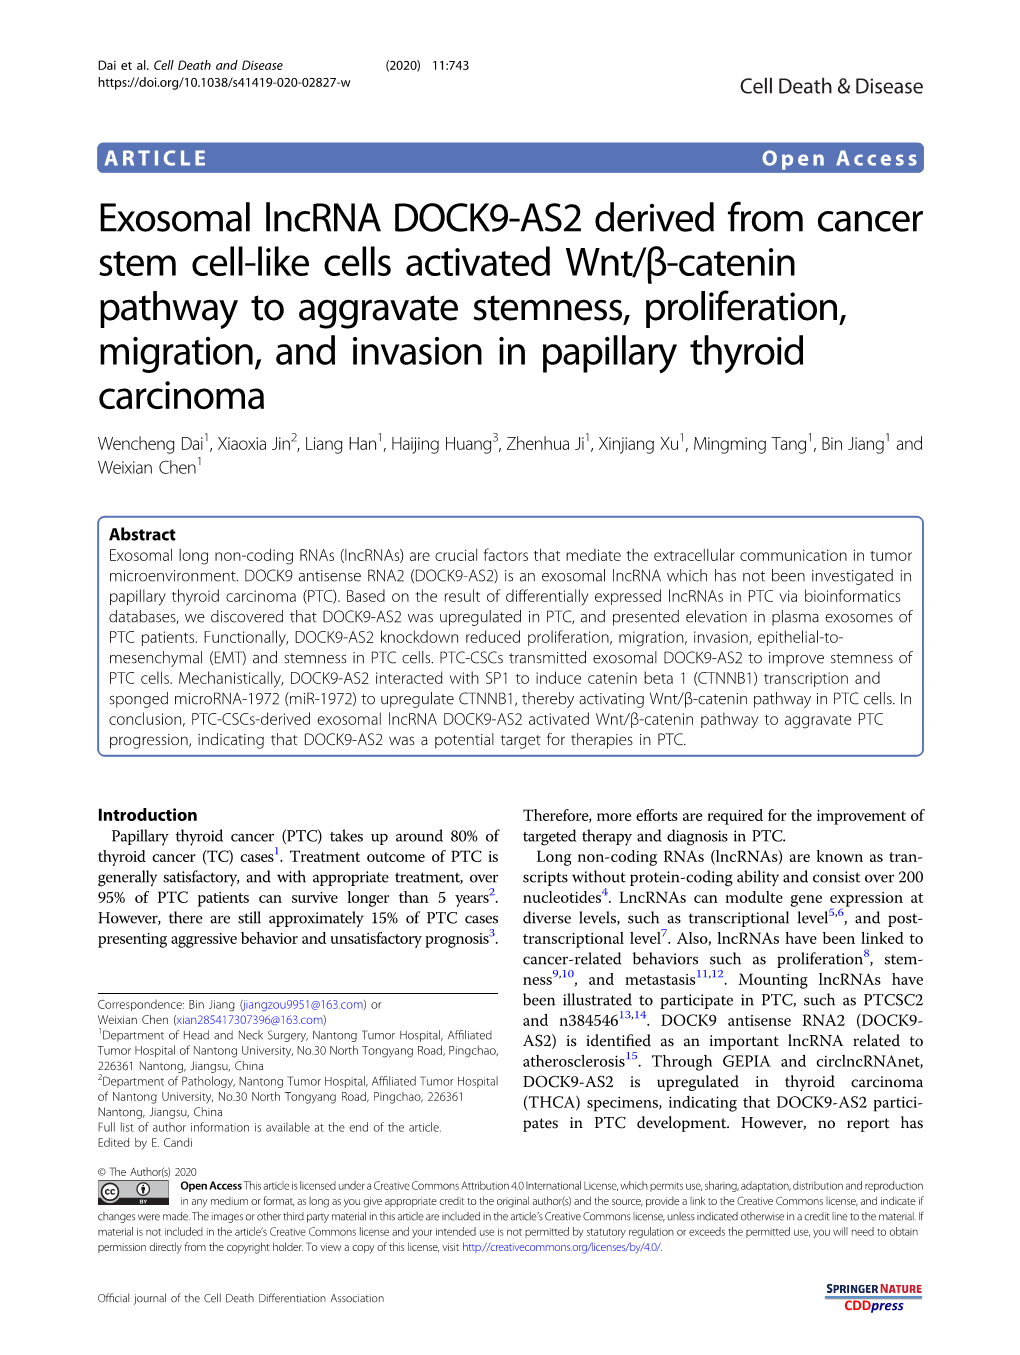 Exosomal Lncrna DOCK9-AS2 Derived from Cancer Stem Cell-Like